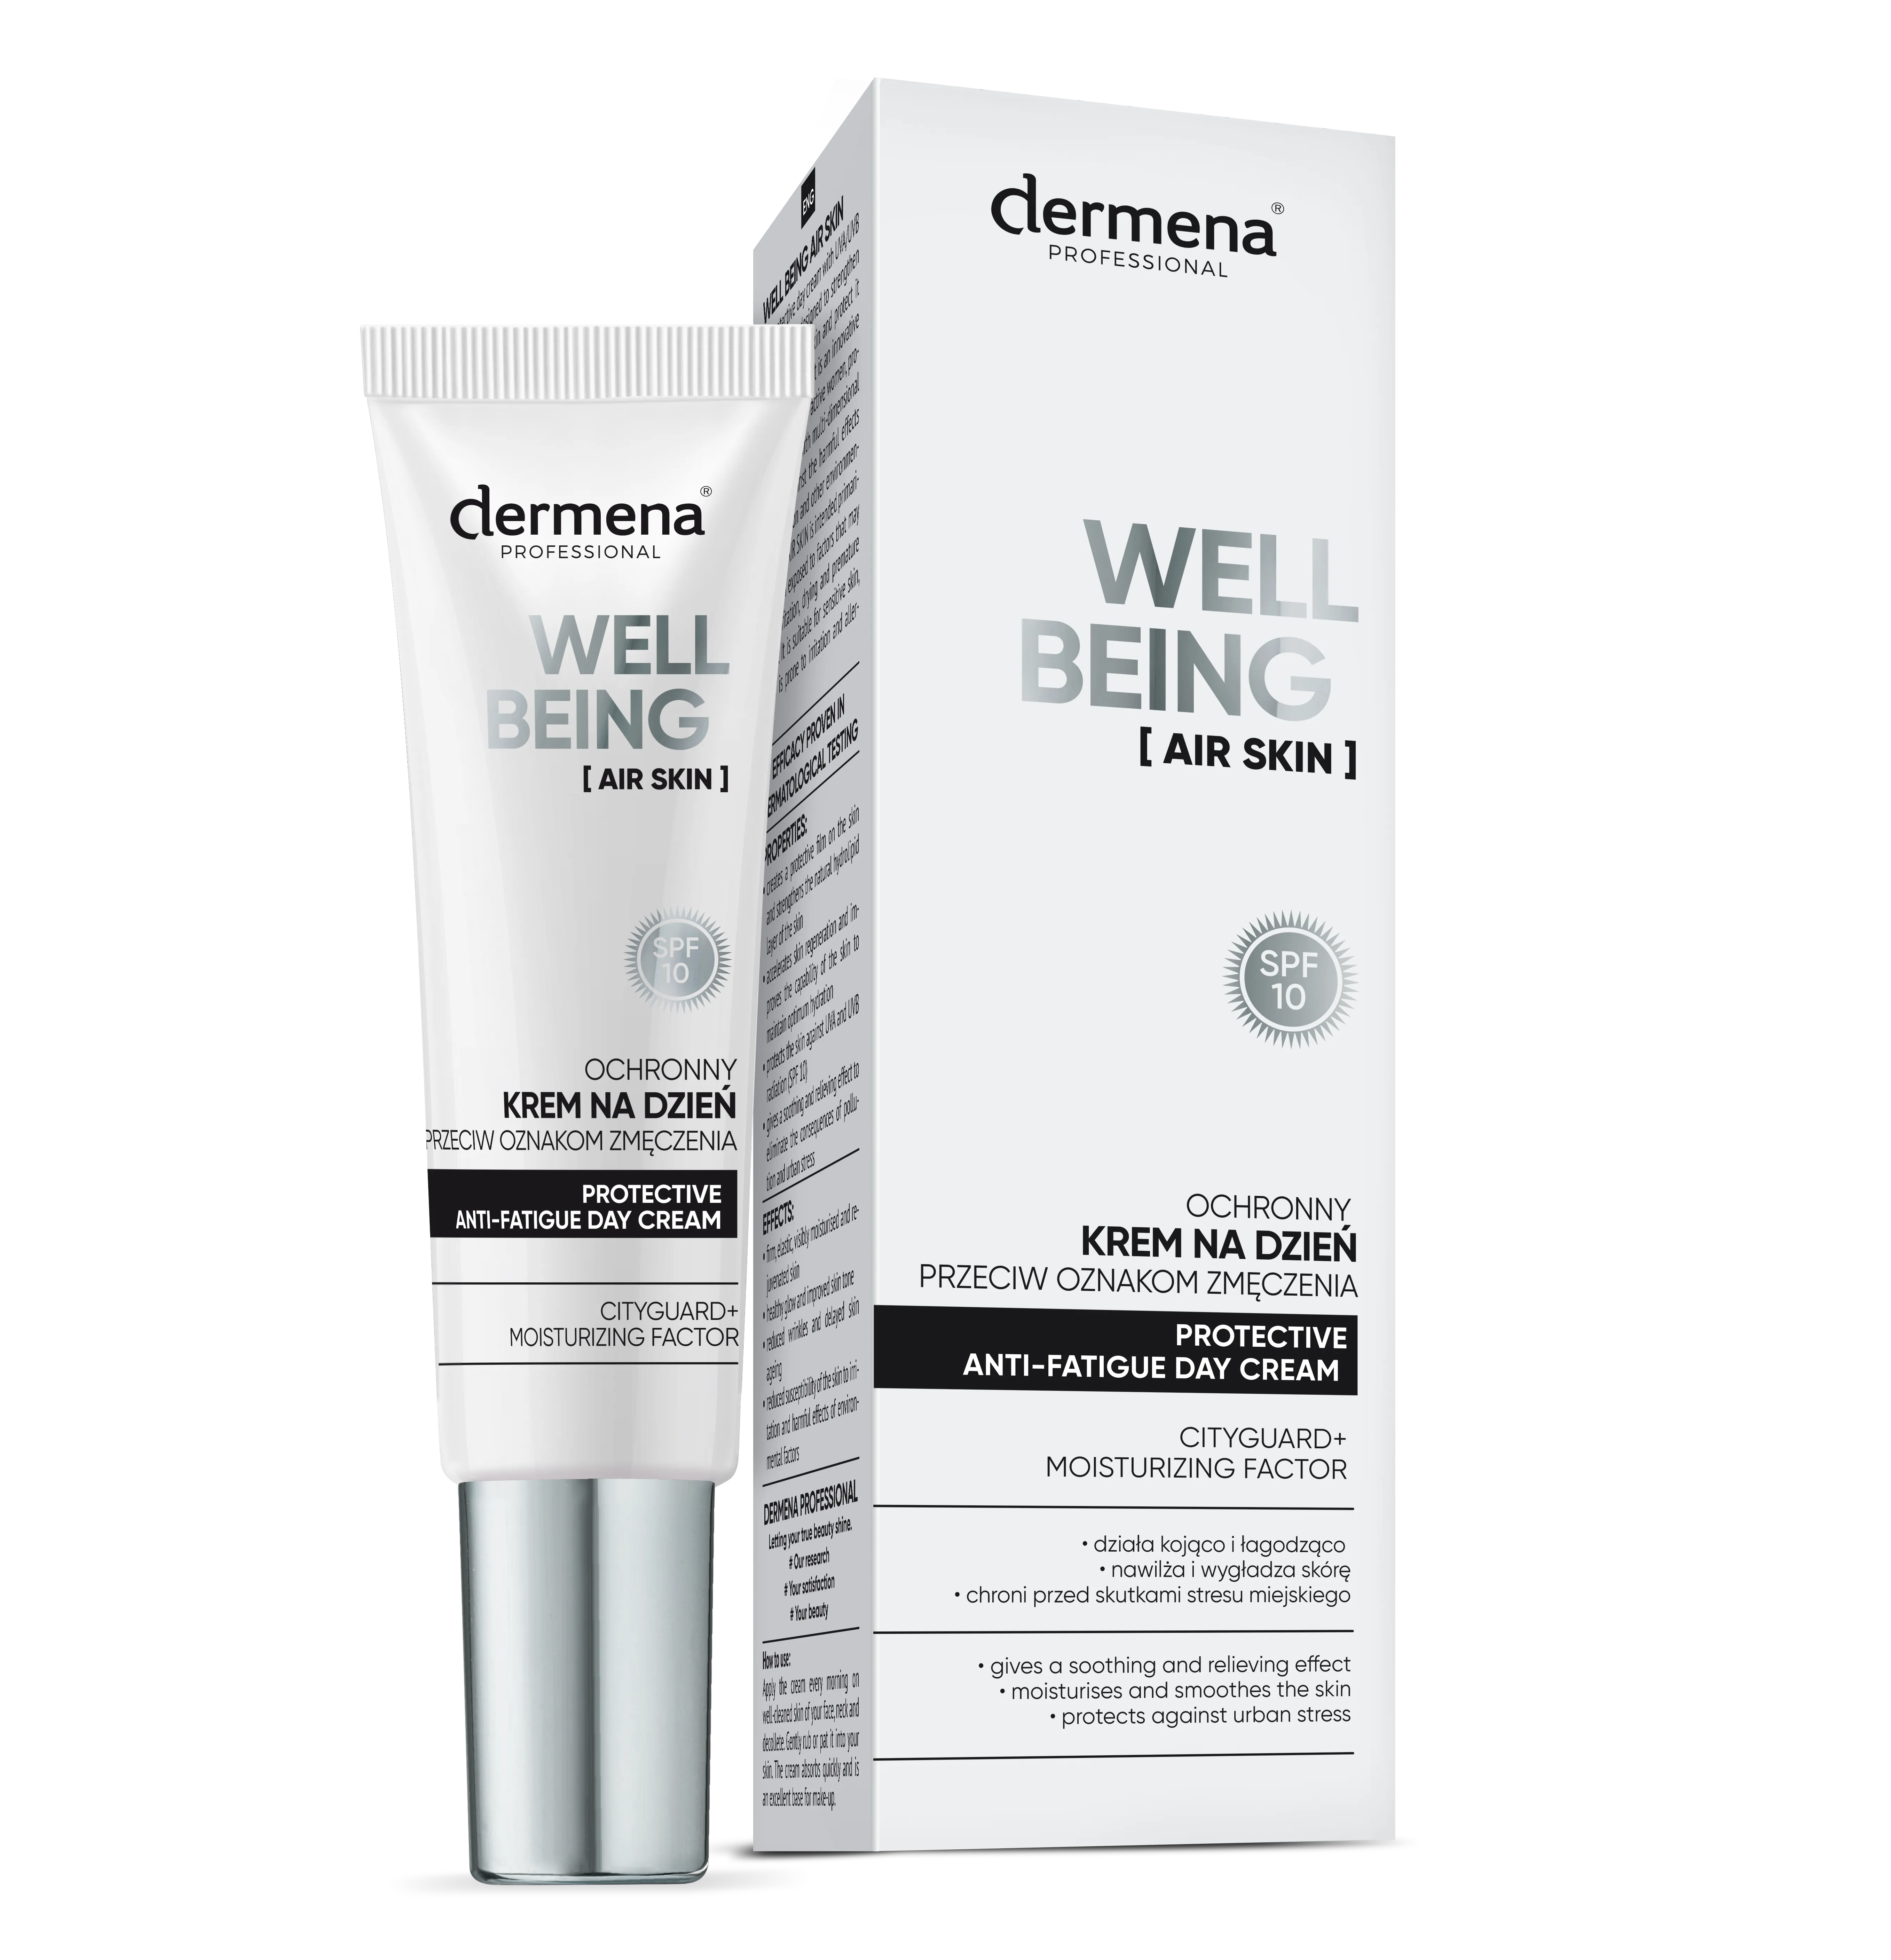 Dermena Professional Well Being Air Skin ochrony krem na dzień przeciw oznakom zmęczenia, 30 ml